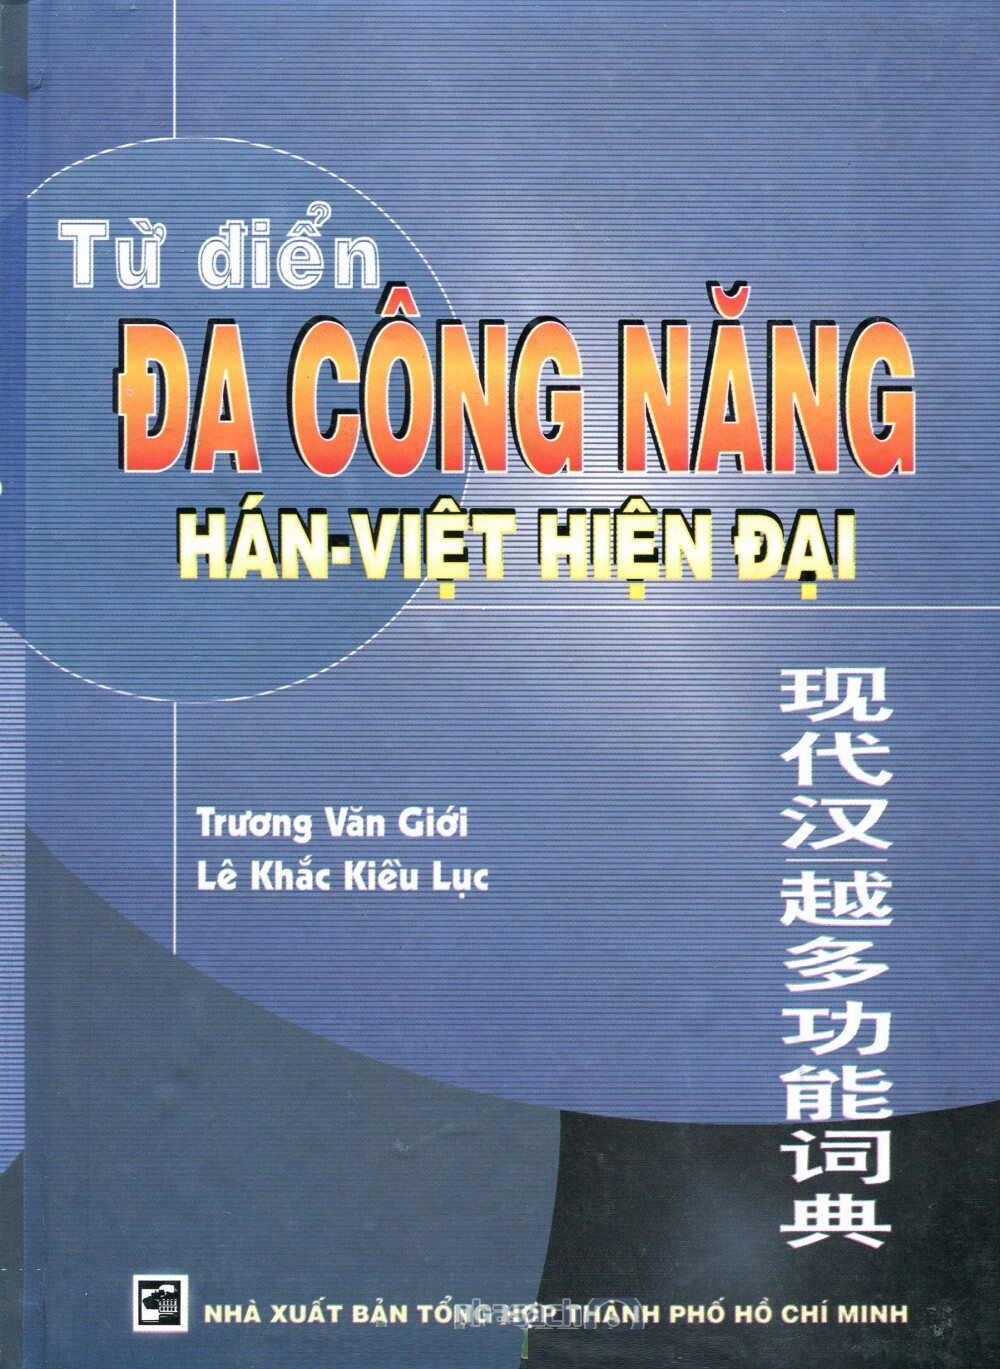 Từ Điển Đa Công Năng Hán Việt Hiện Đại